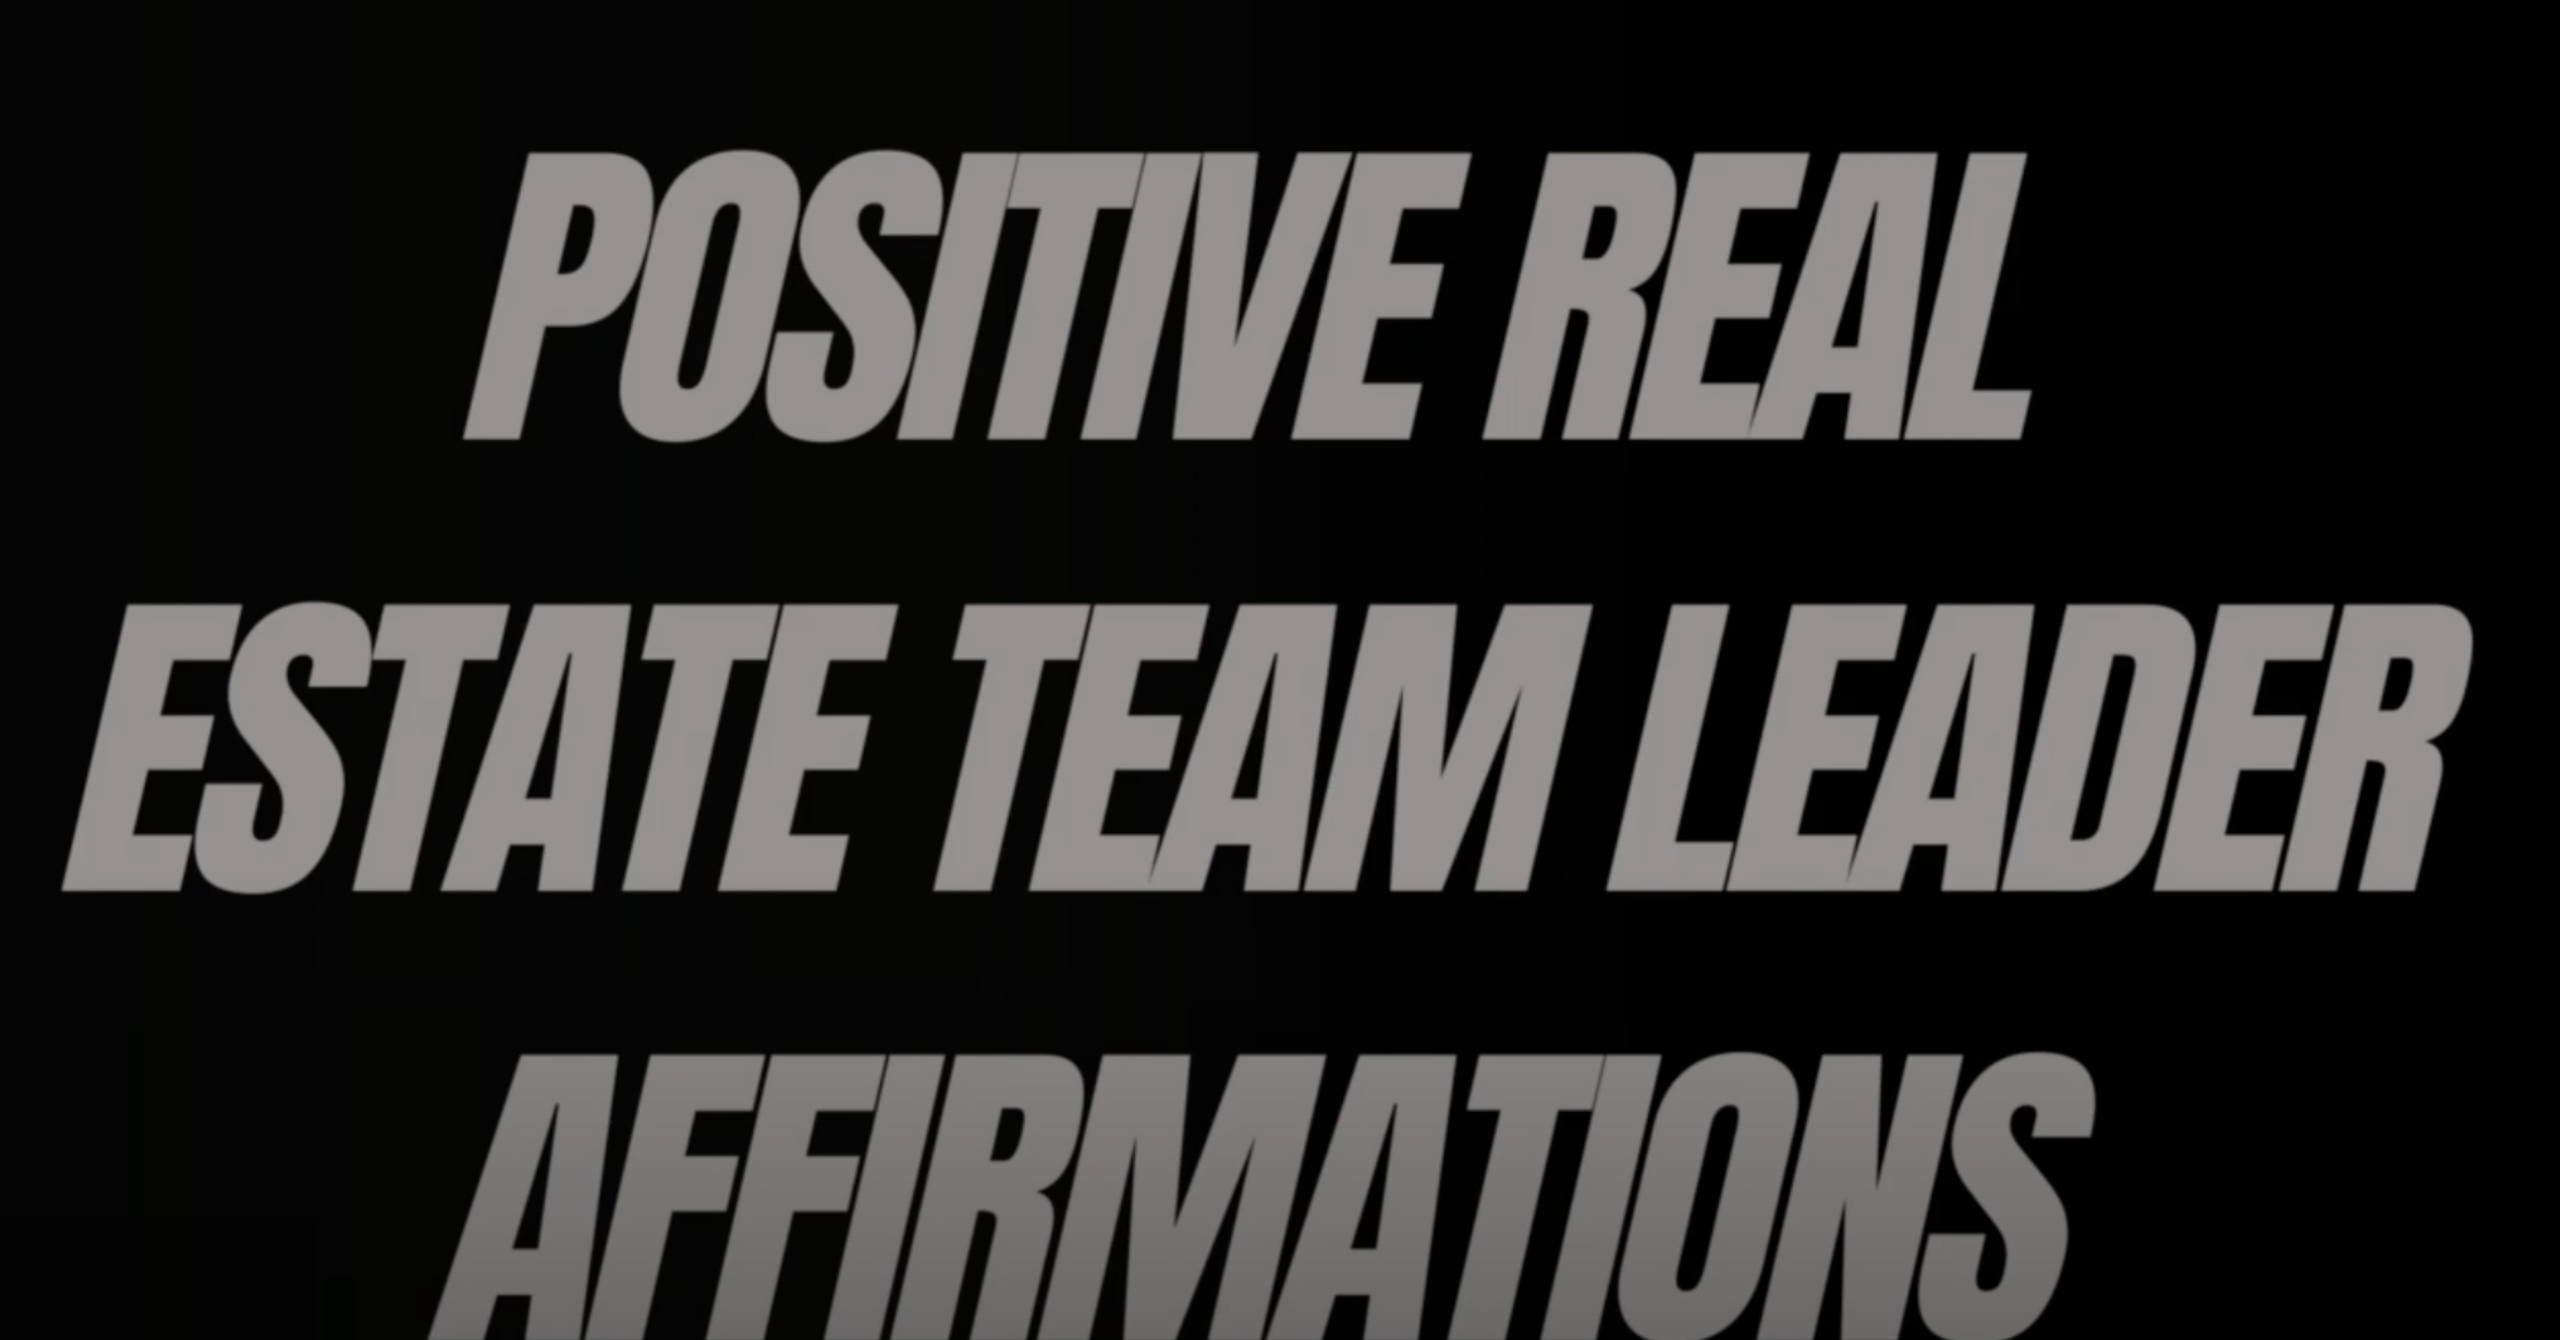 Positive Real Estate Team Leader Affirmations